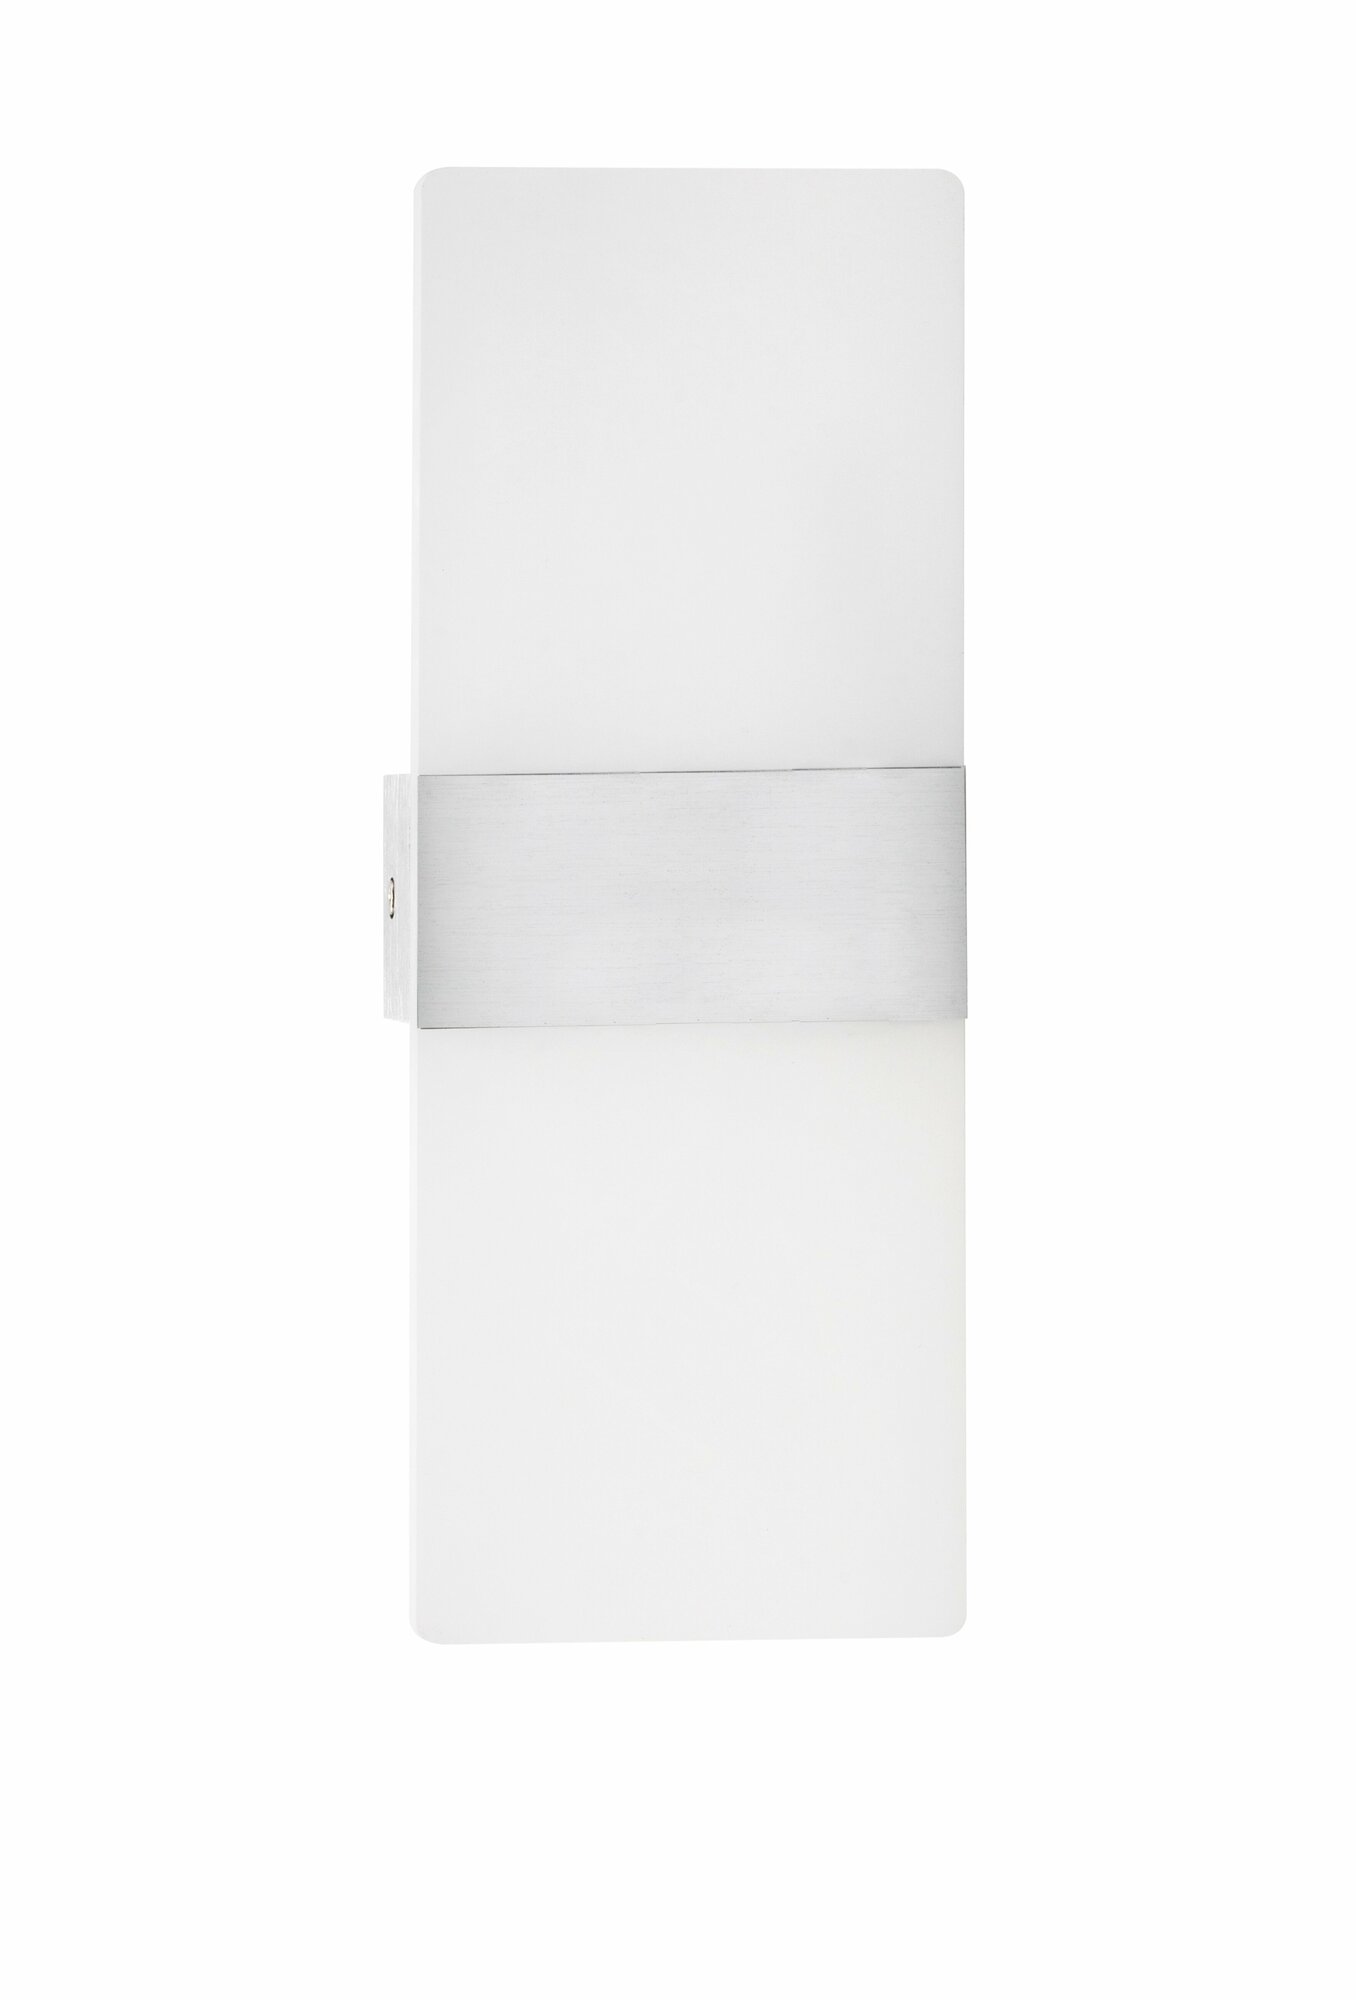 Светильник бра настенный светодиодный Calista 285x105 мм Silver серебристый (теплый свет 3000K)